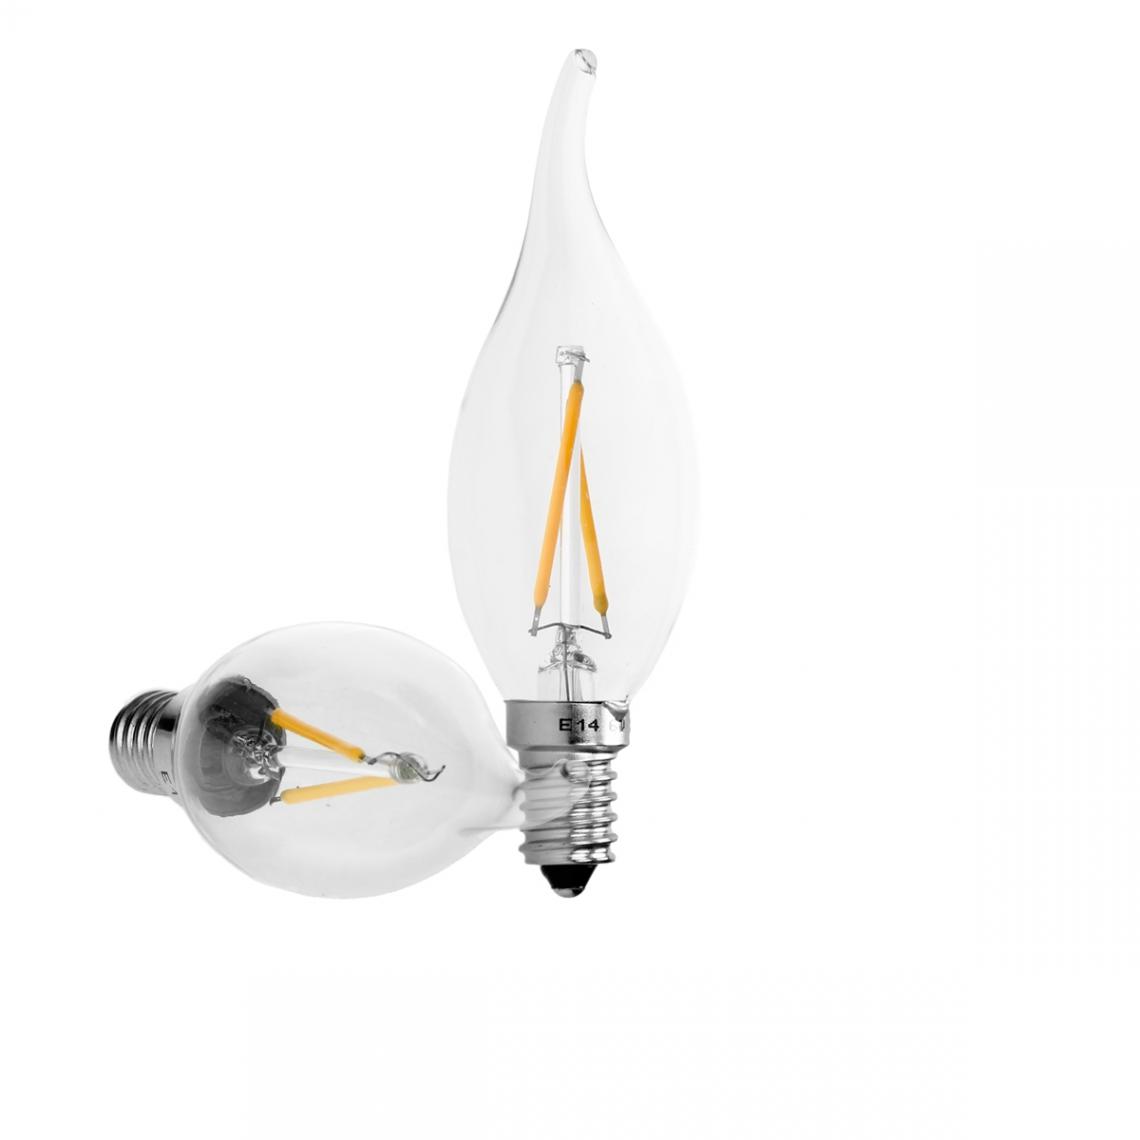 Ecd Germany - ECD Germany 4 x LED Ampoule Filament E14 2W 204 Lumens Angle de faisceau 120 ° AC 220-240V environ 15W Ampoule Lampe Blanc Chaud - Ampoules LED